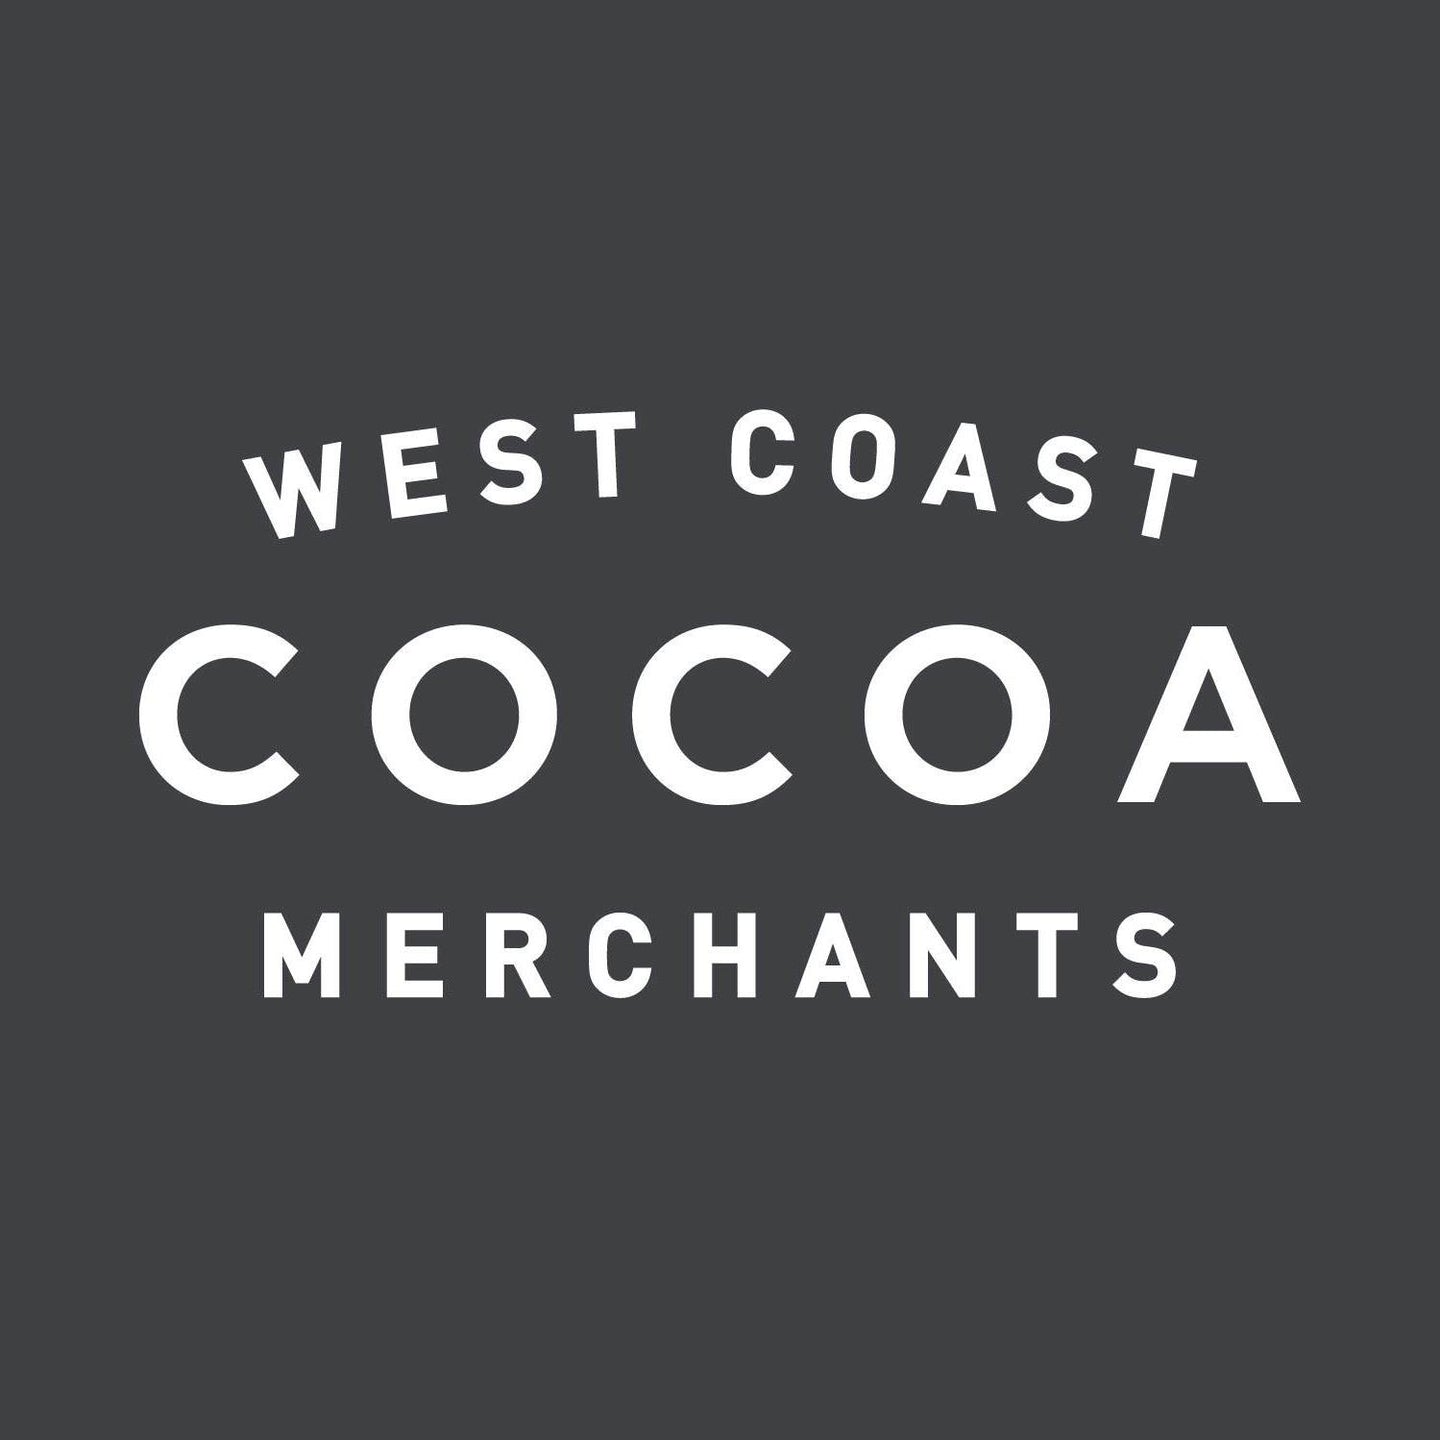 West Coast Cocoa